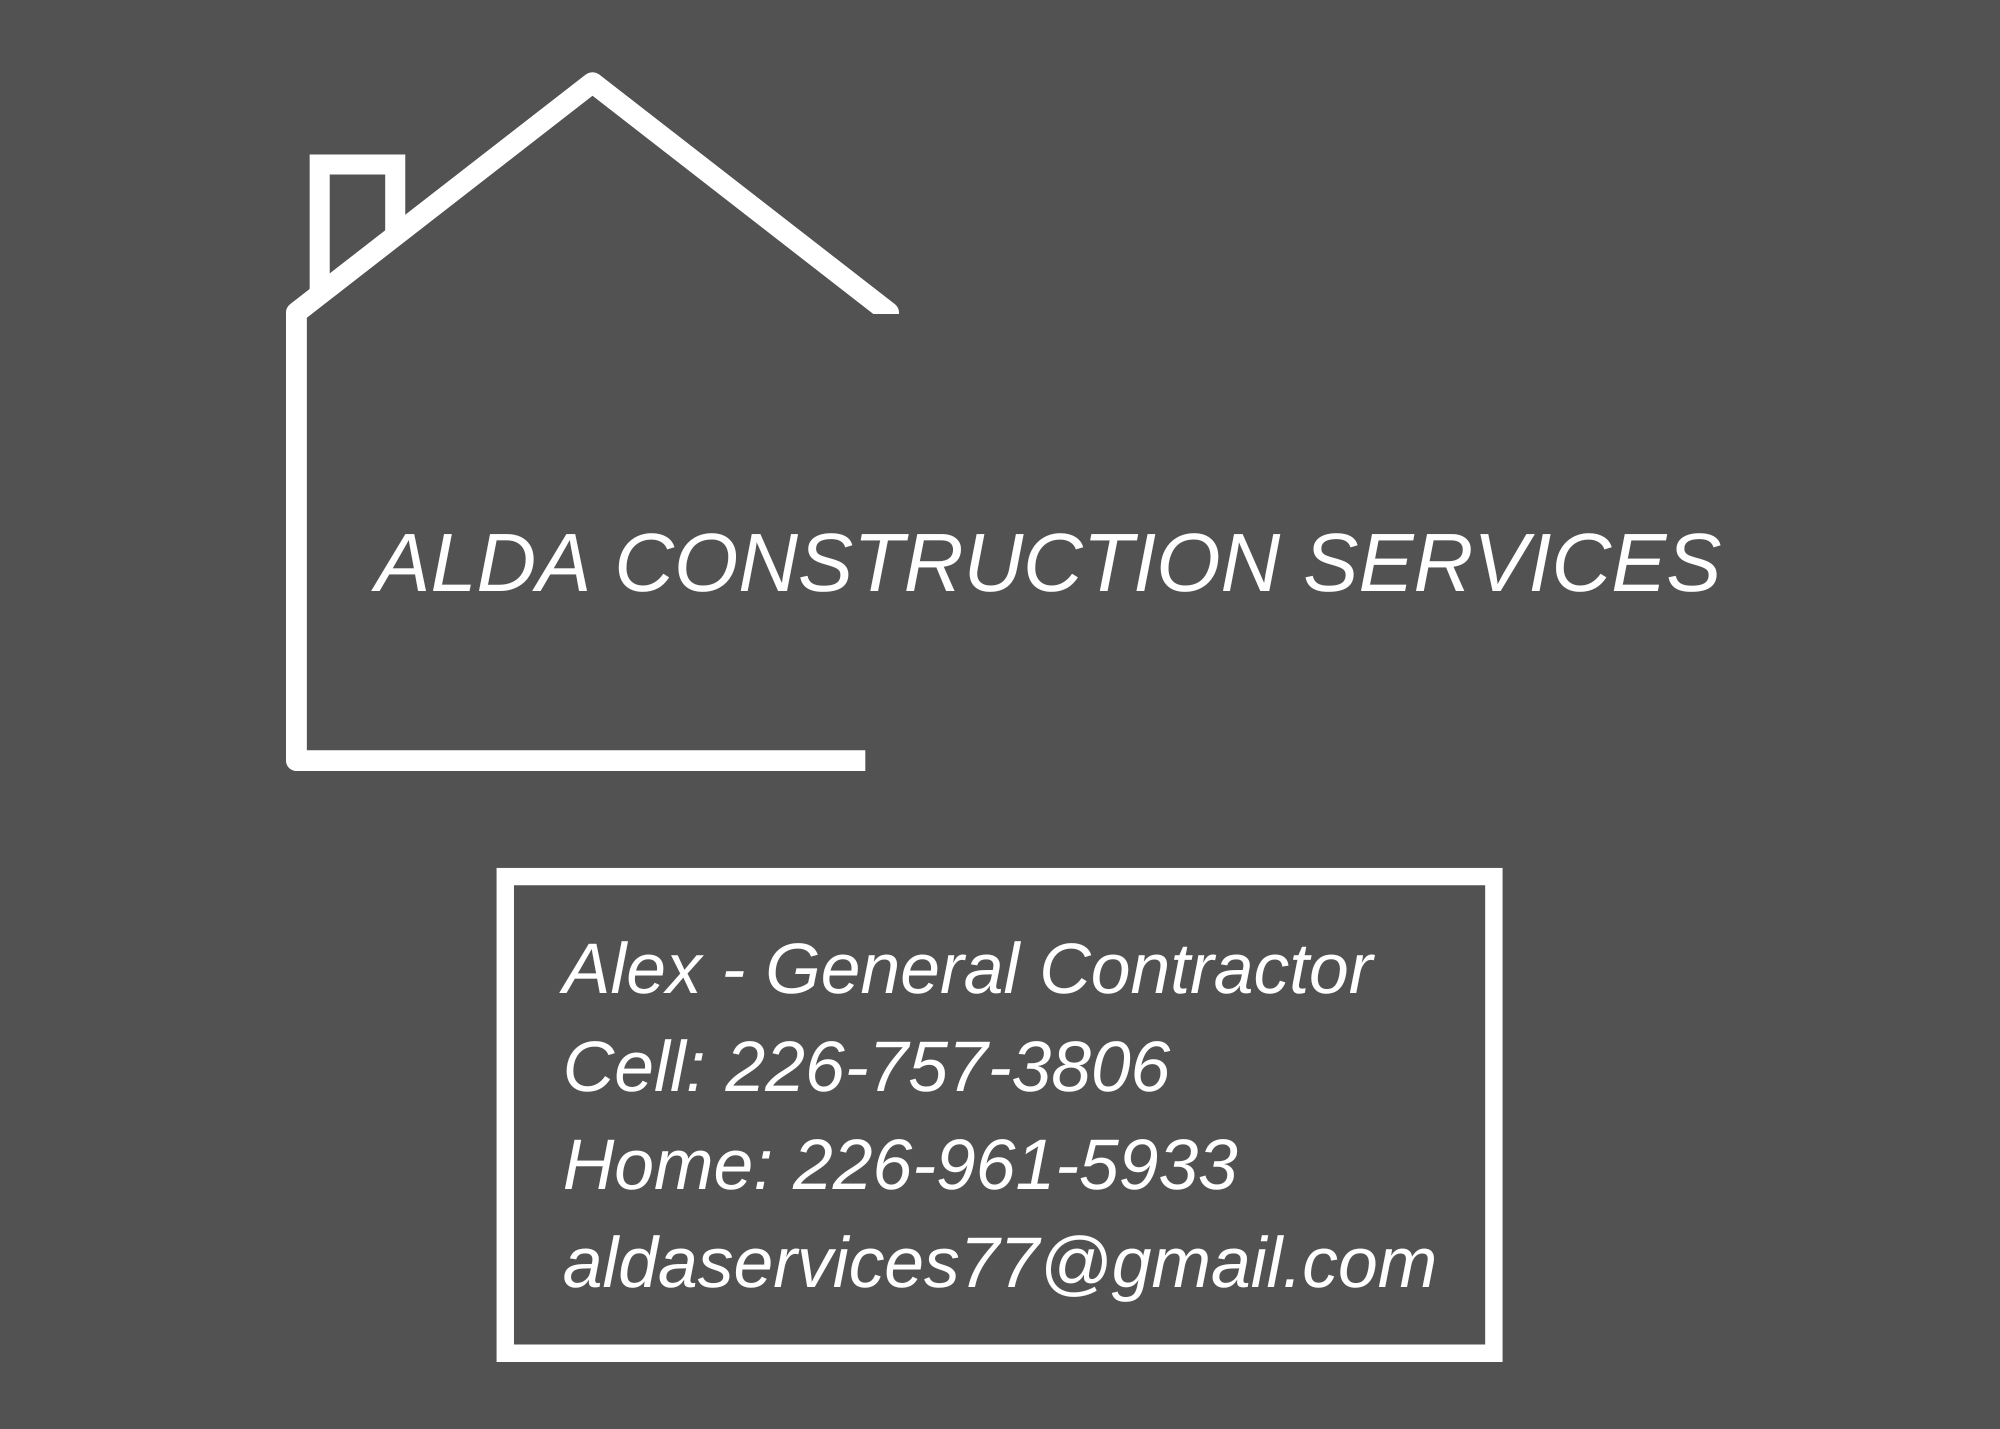 Alda construstion services logo 